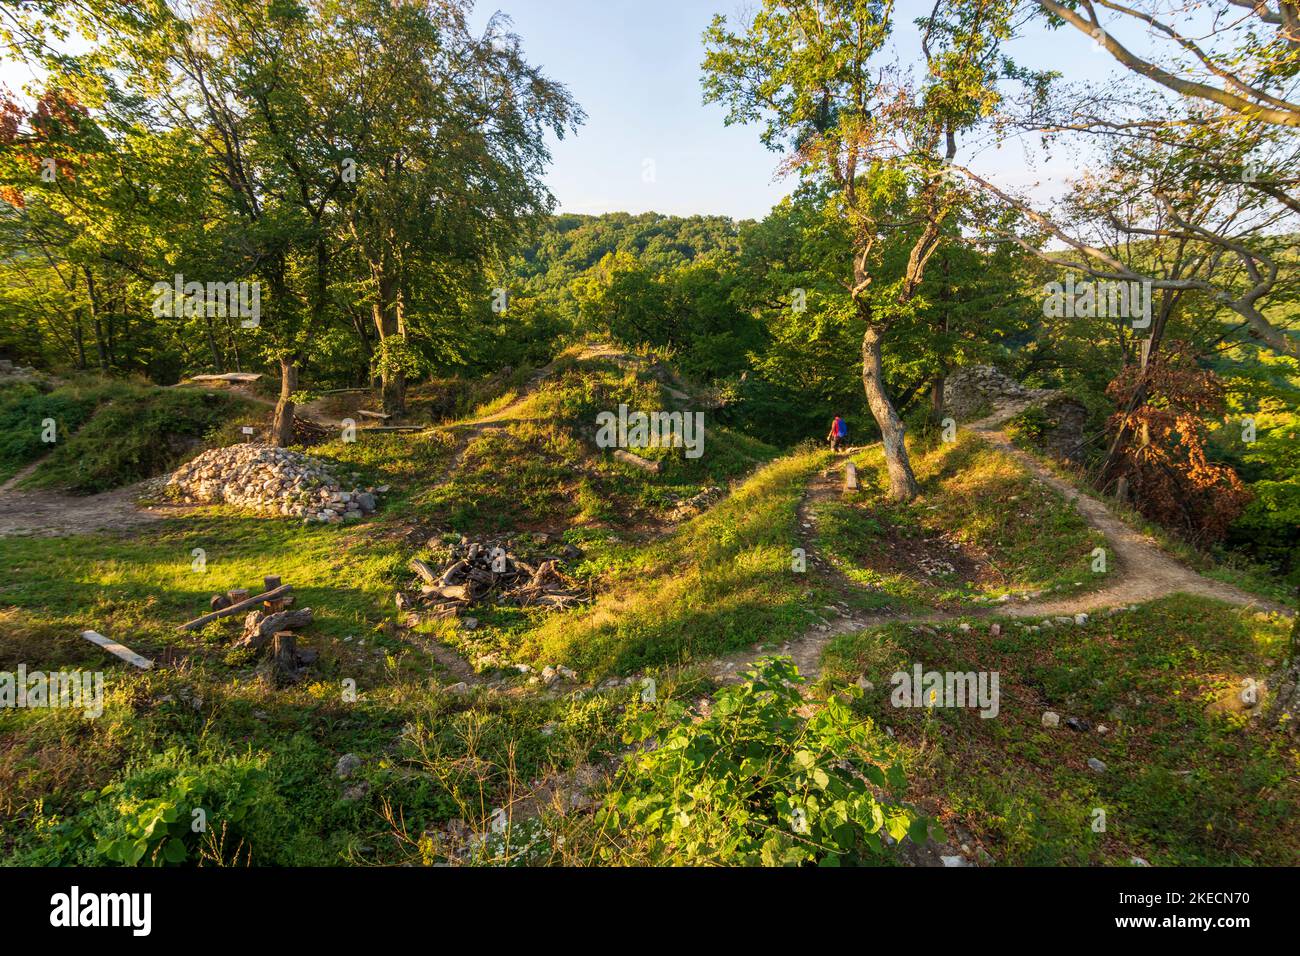 Sväty Jur (Sankt Georgen), Biely Kamen Castle ruins (Burg Weißenstein) in Male Karpaty (Little Carpathians), Slovakia Stock Photo